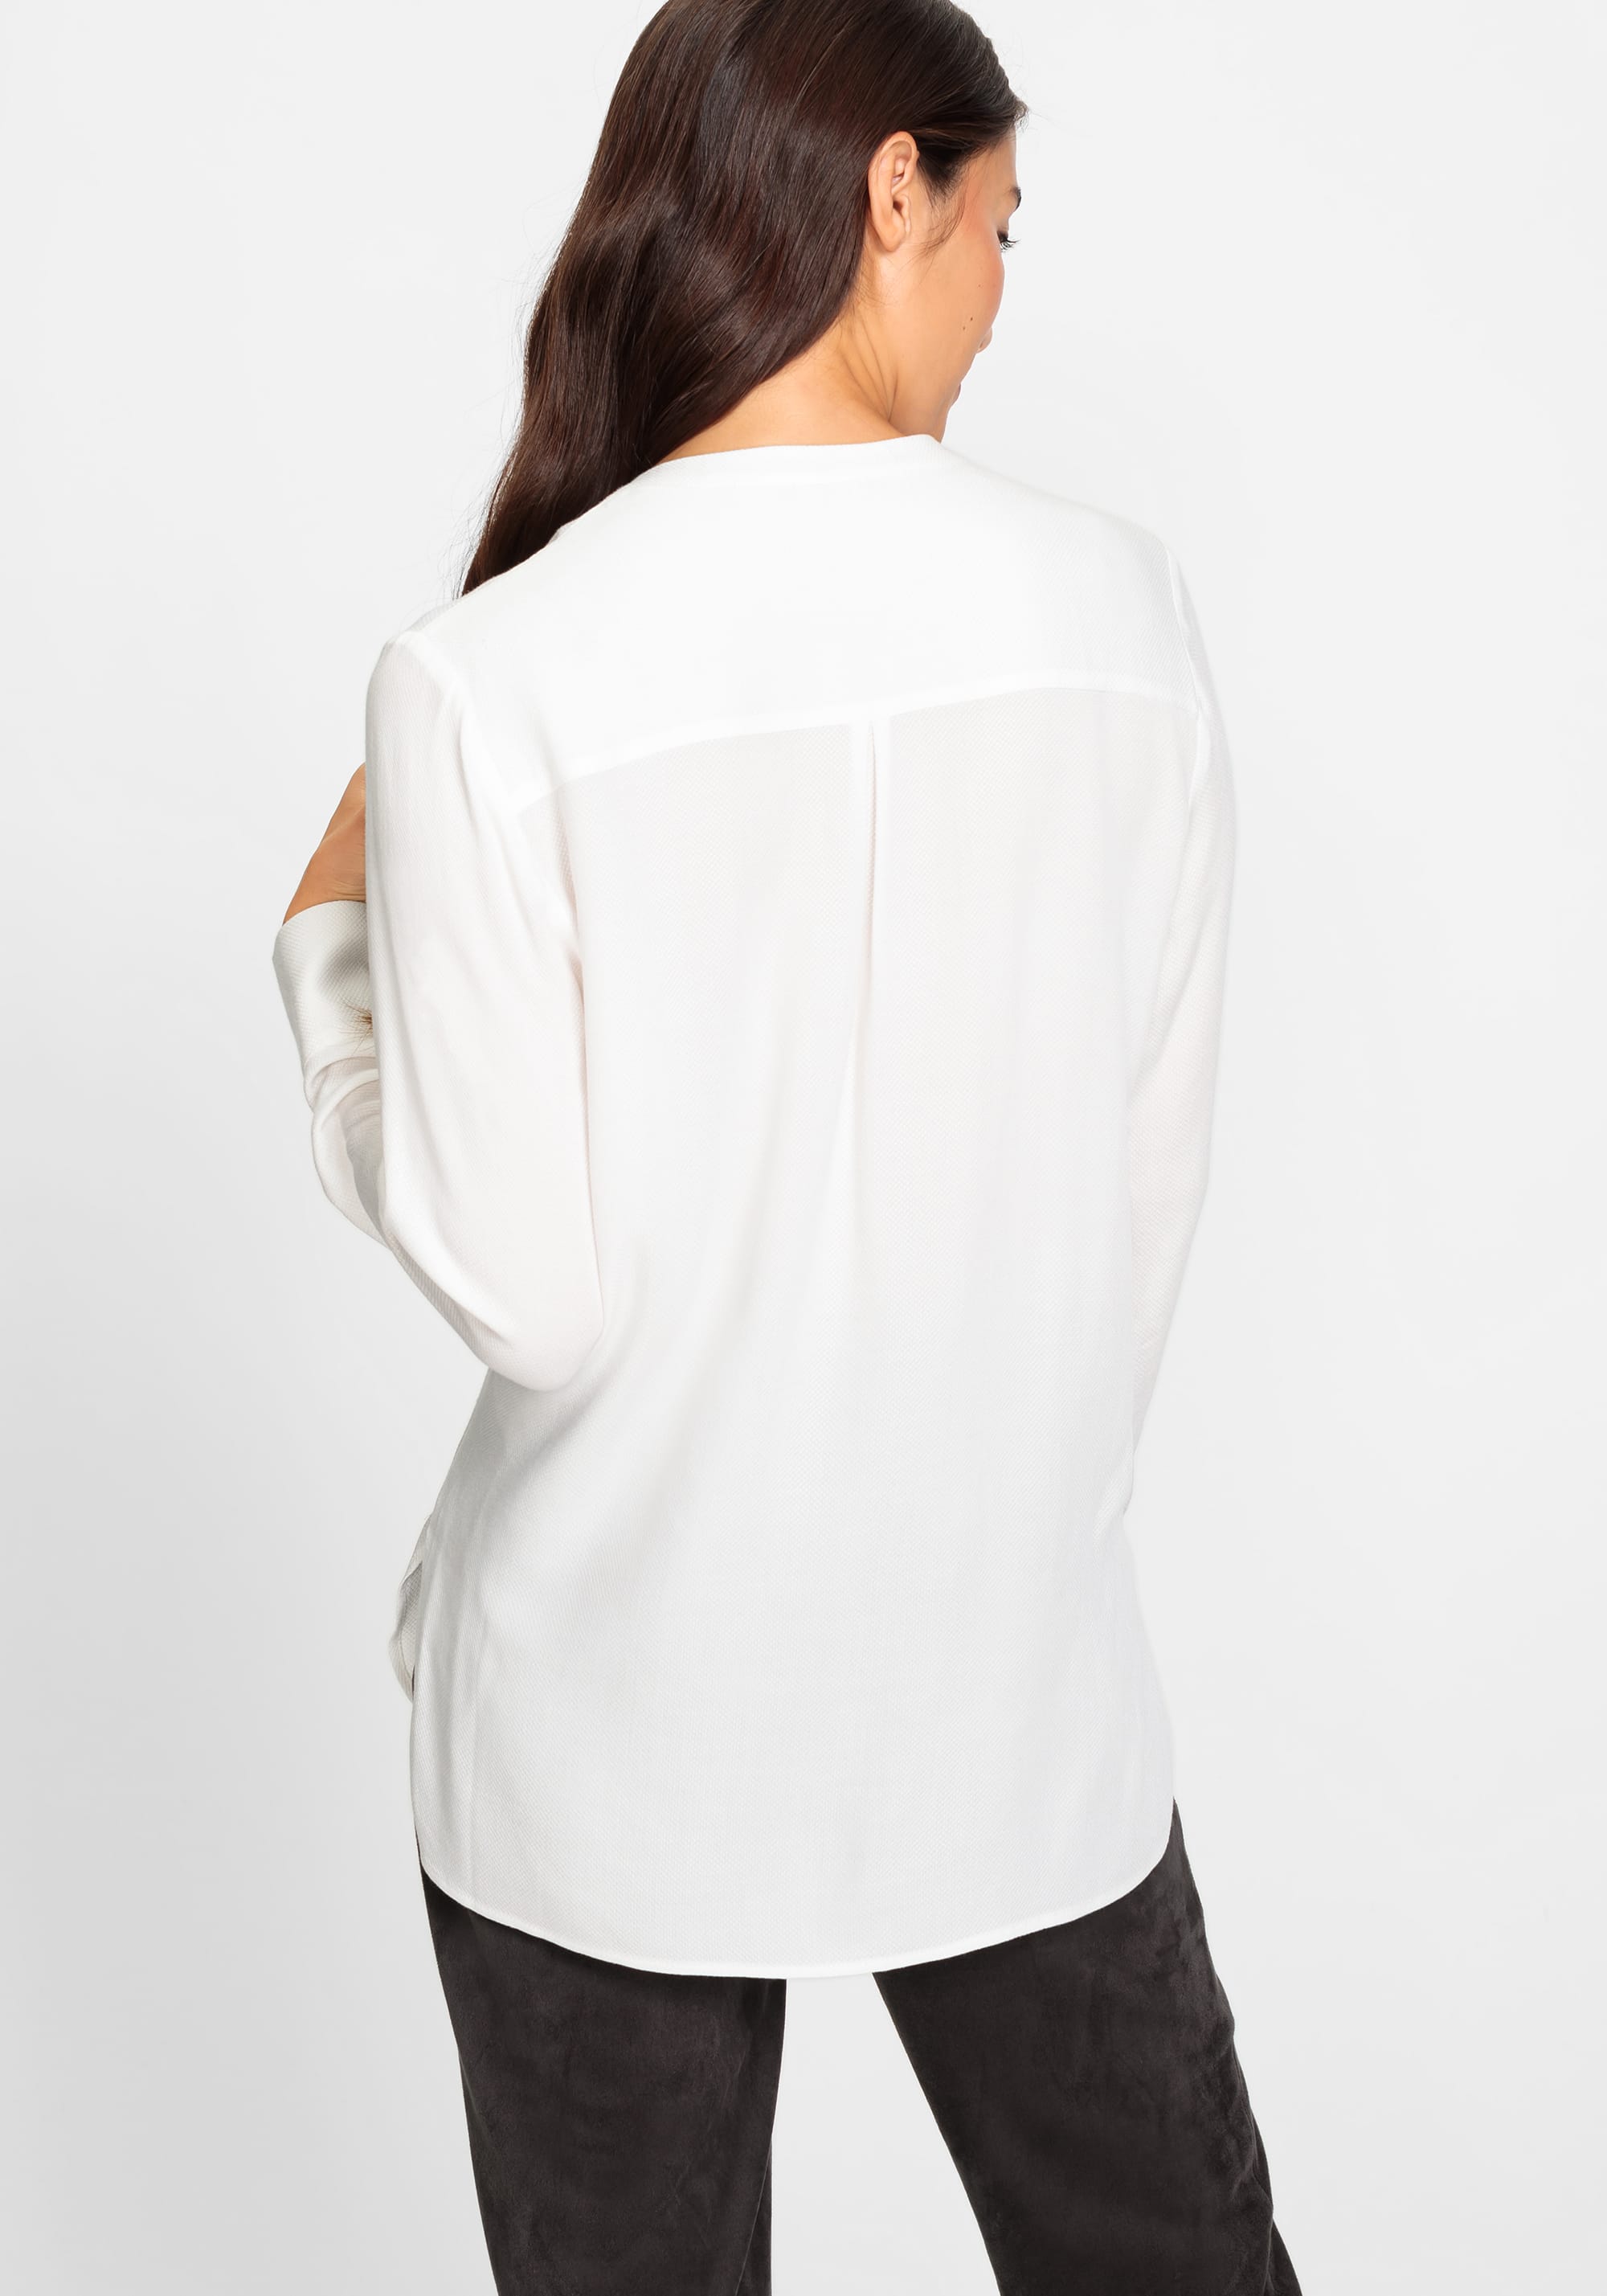 Satin Effect Tunic Shirt - Olsen Fashion Canada